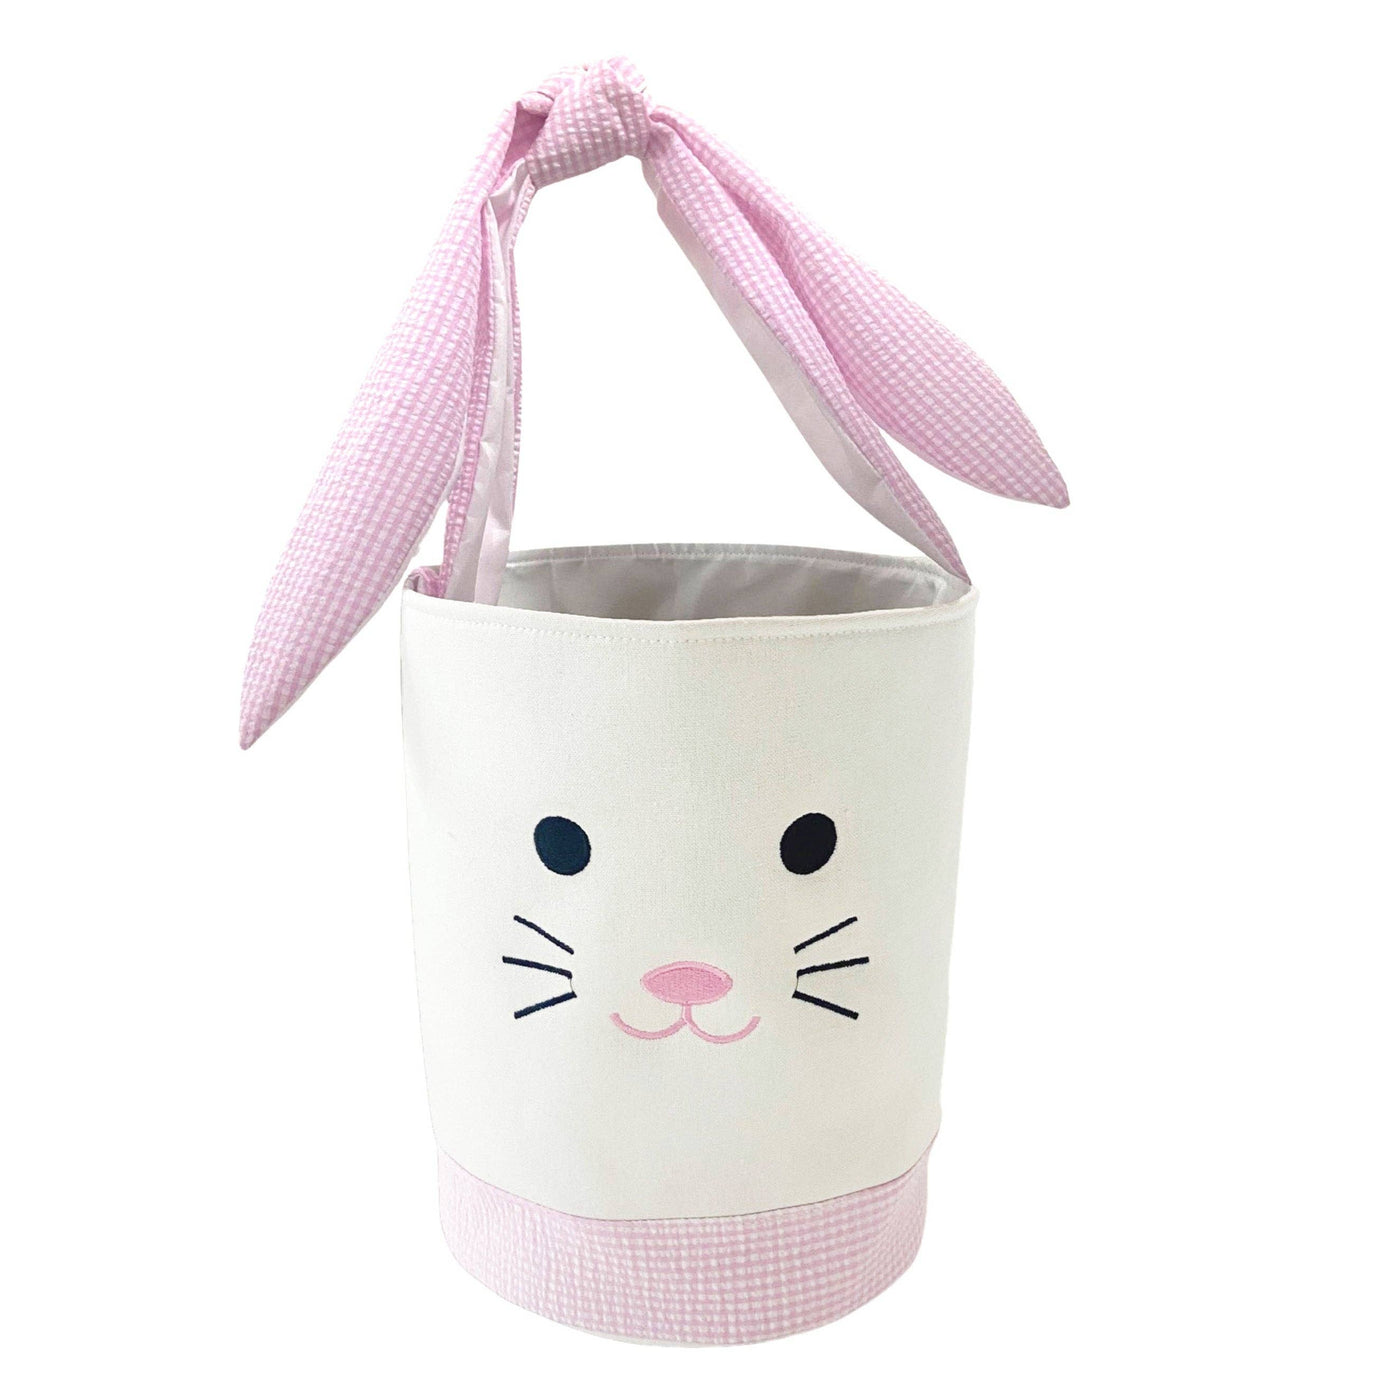 Easter Bunny Basket - Pink